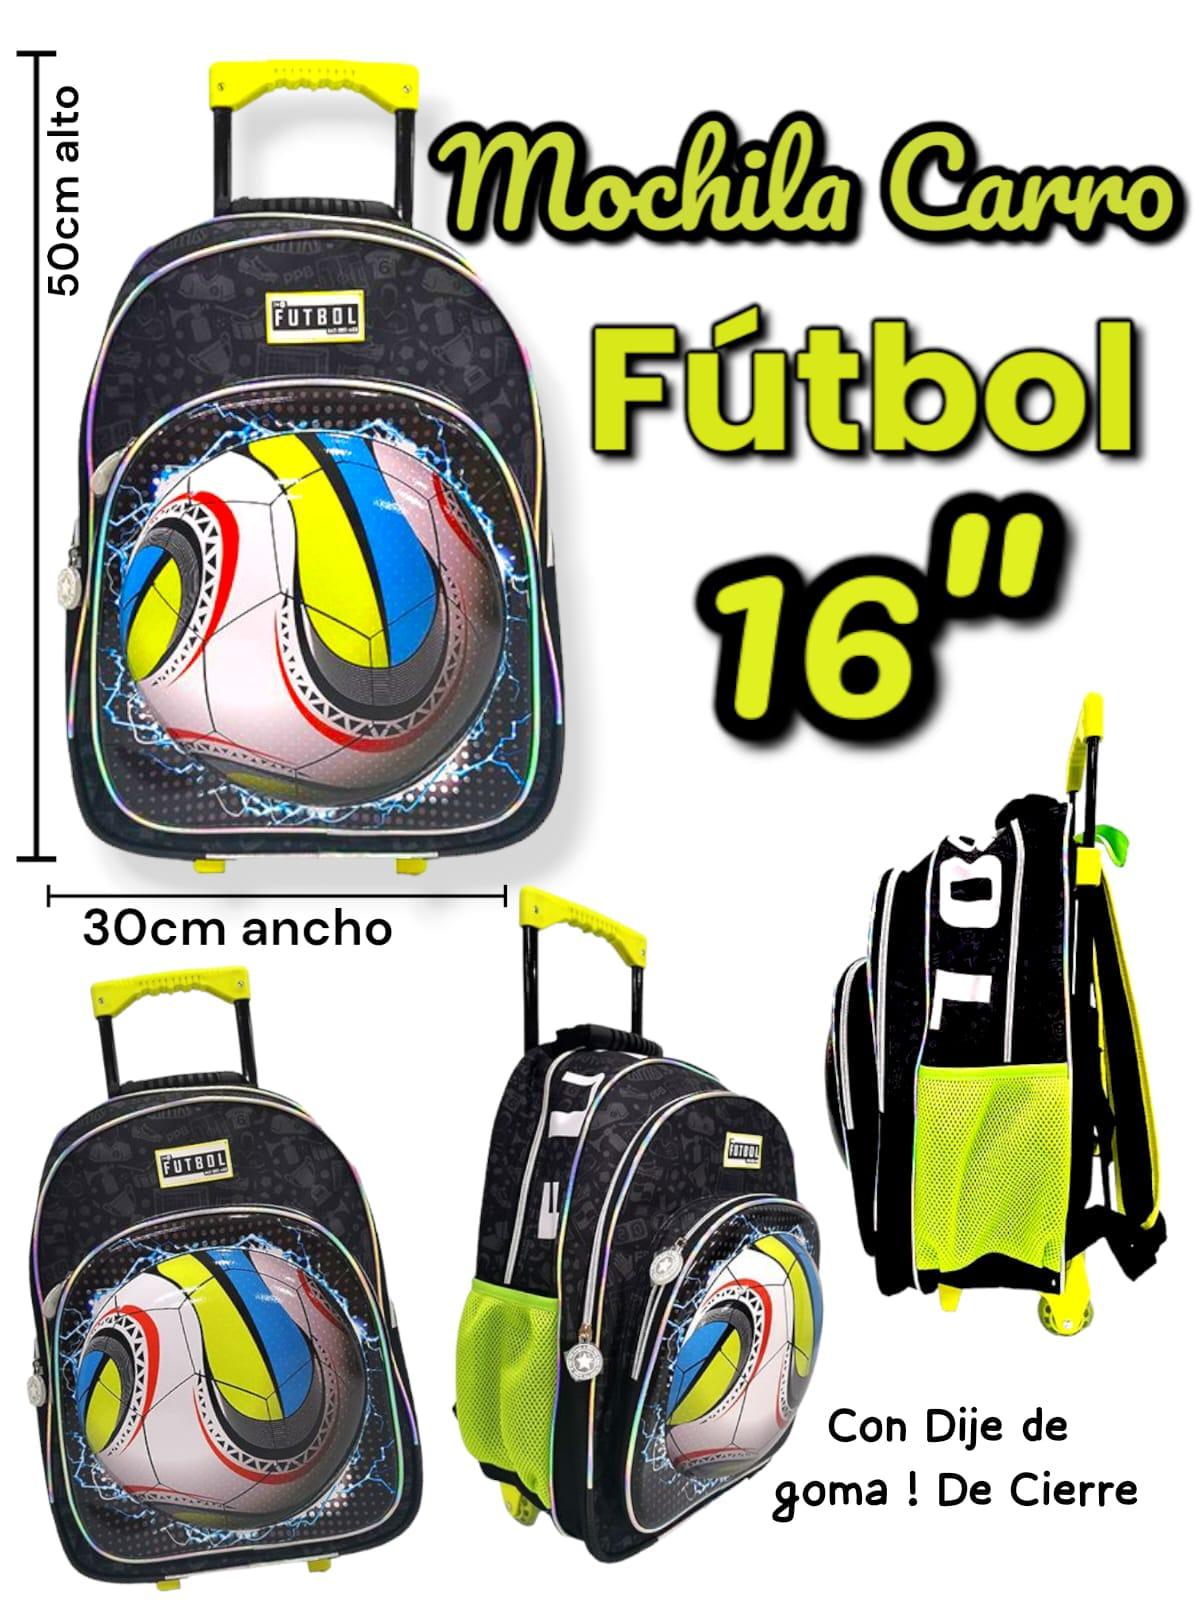 Mochila Carro Futbol 16